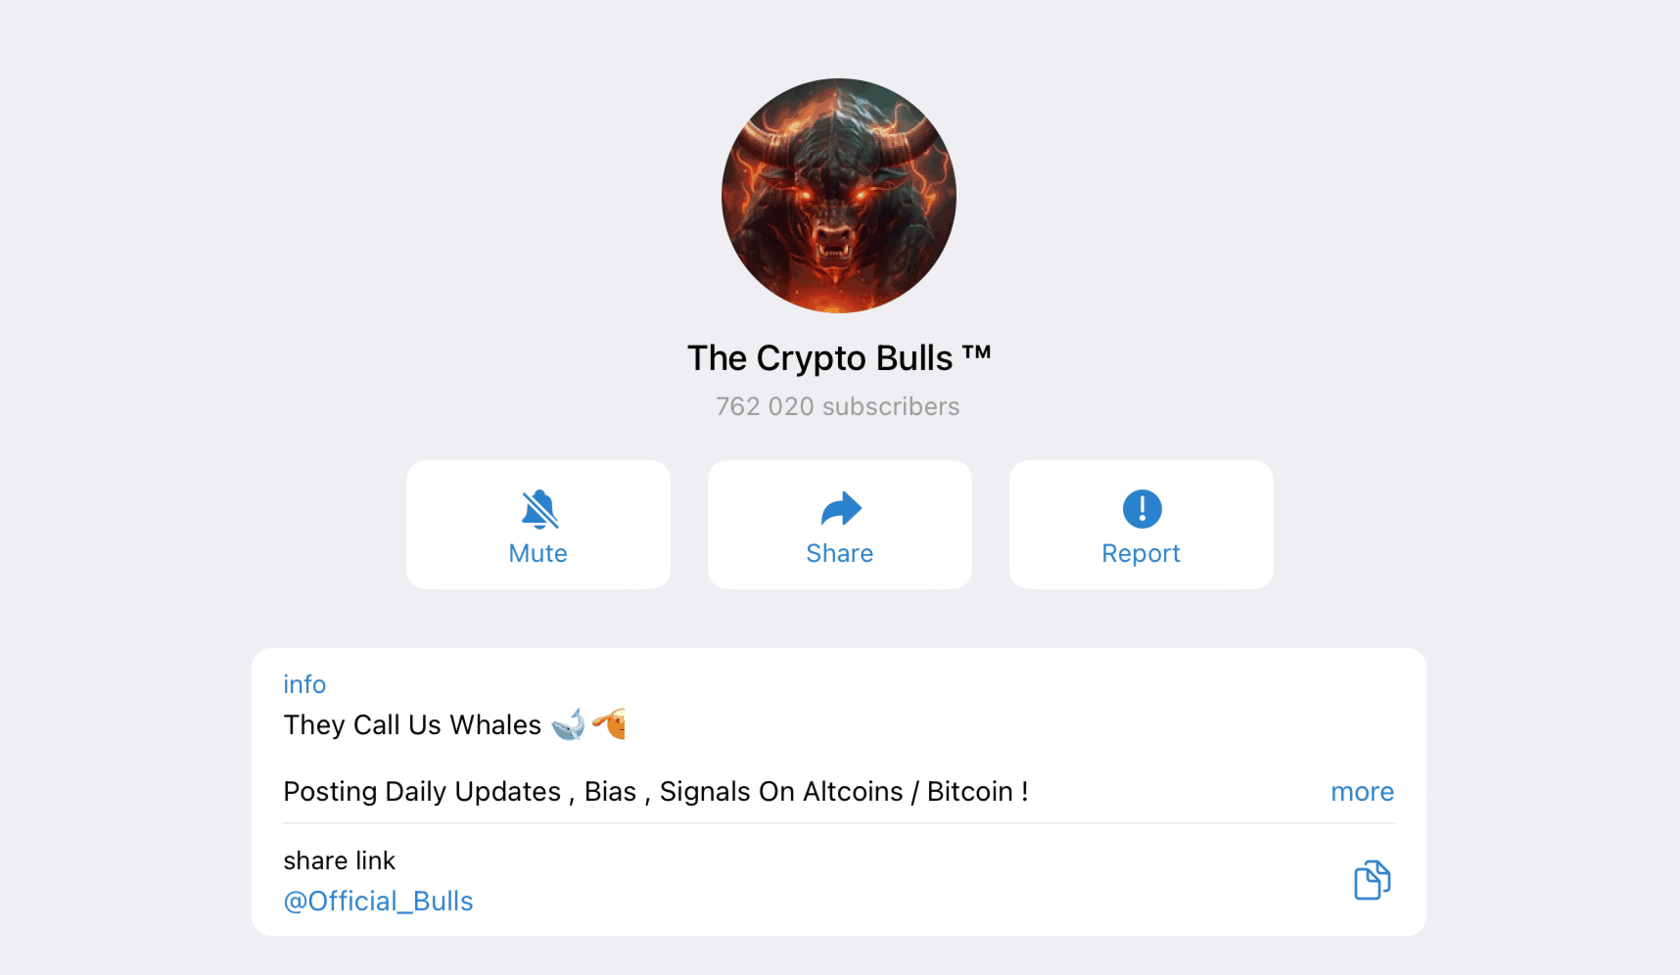 The Crypto Bulls